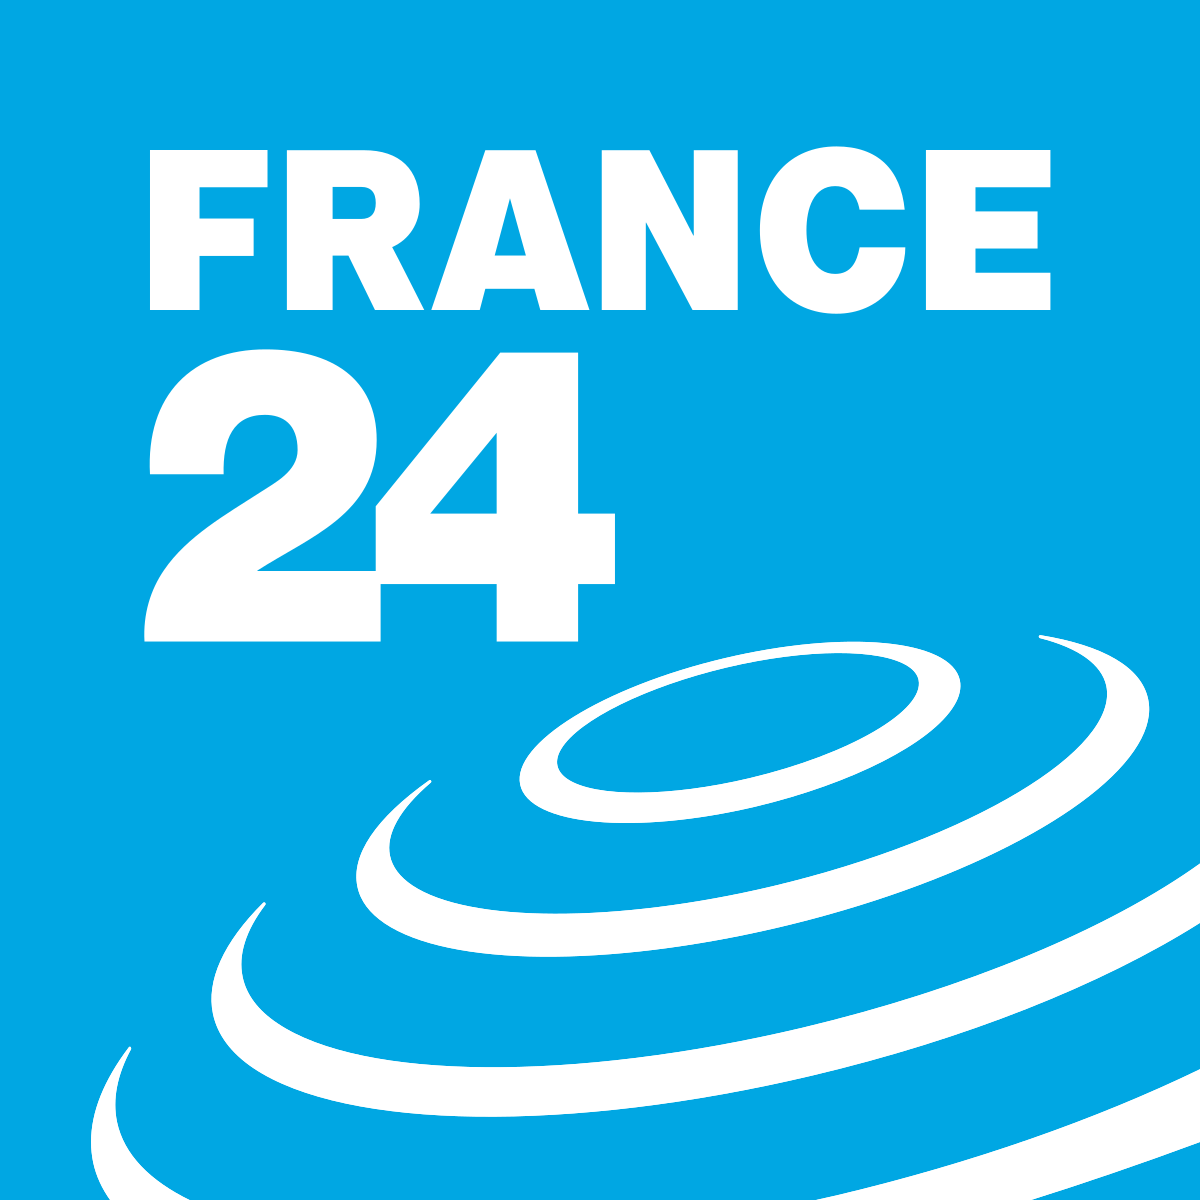 France 24 logo ile ilgili gÃ¶rsel sonucu